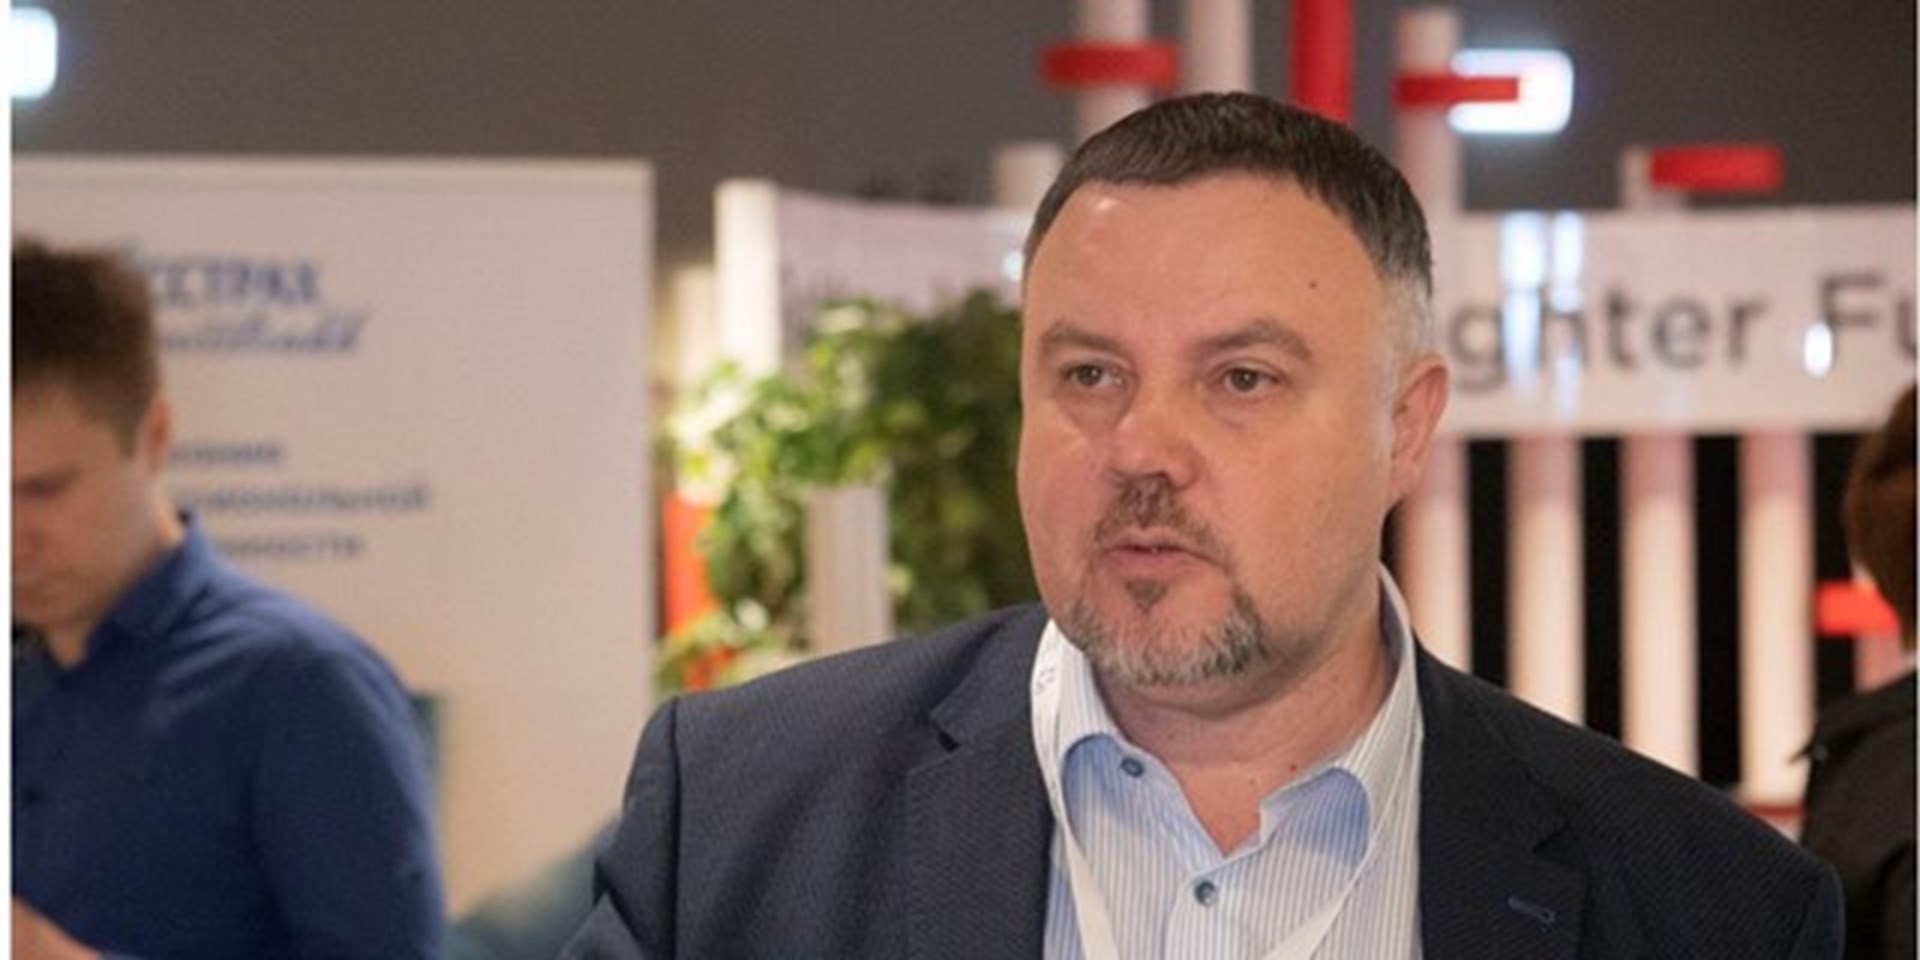 Ян Власов: «Совместный труд на пользу пациента объединяет»